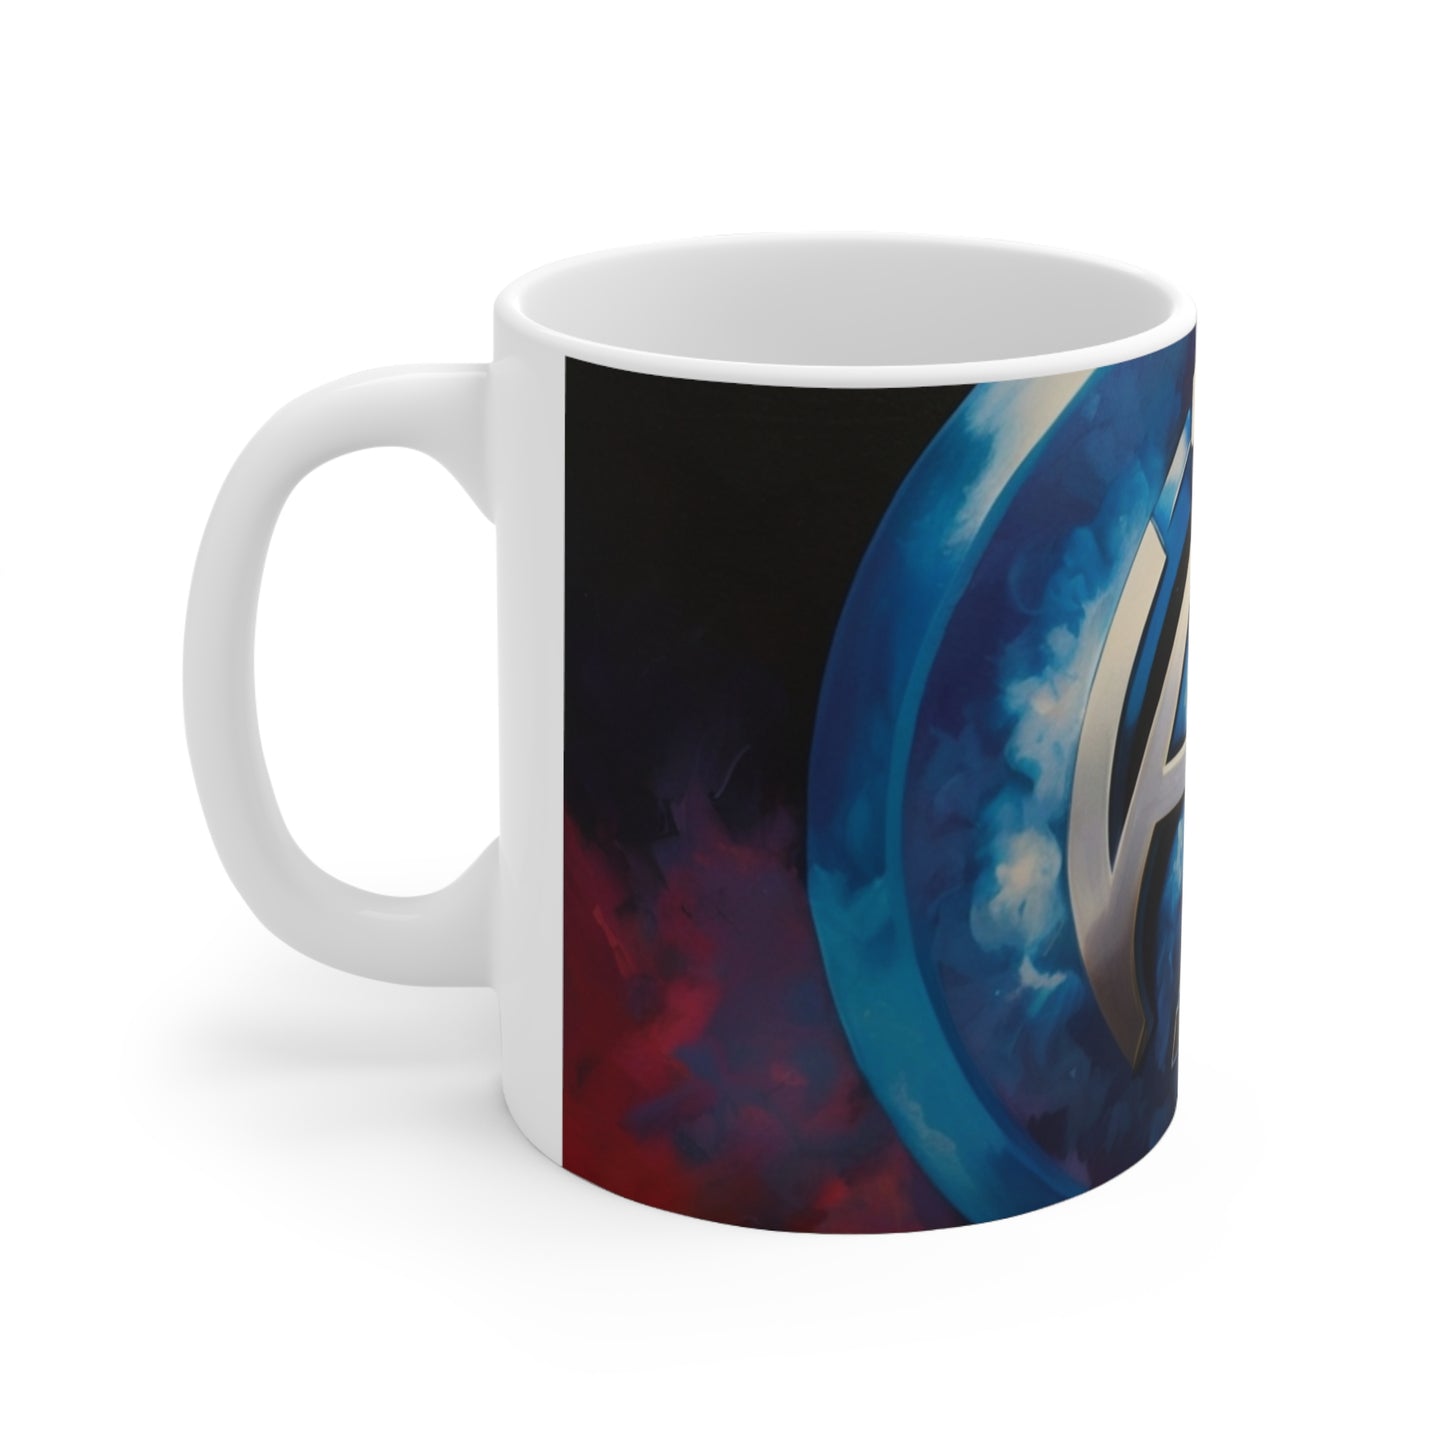 Chrome Fantastic Four Logo Mug - Ceramic Coffee Mug 11oz